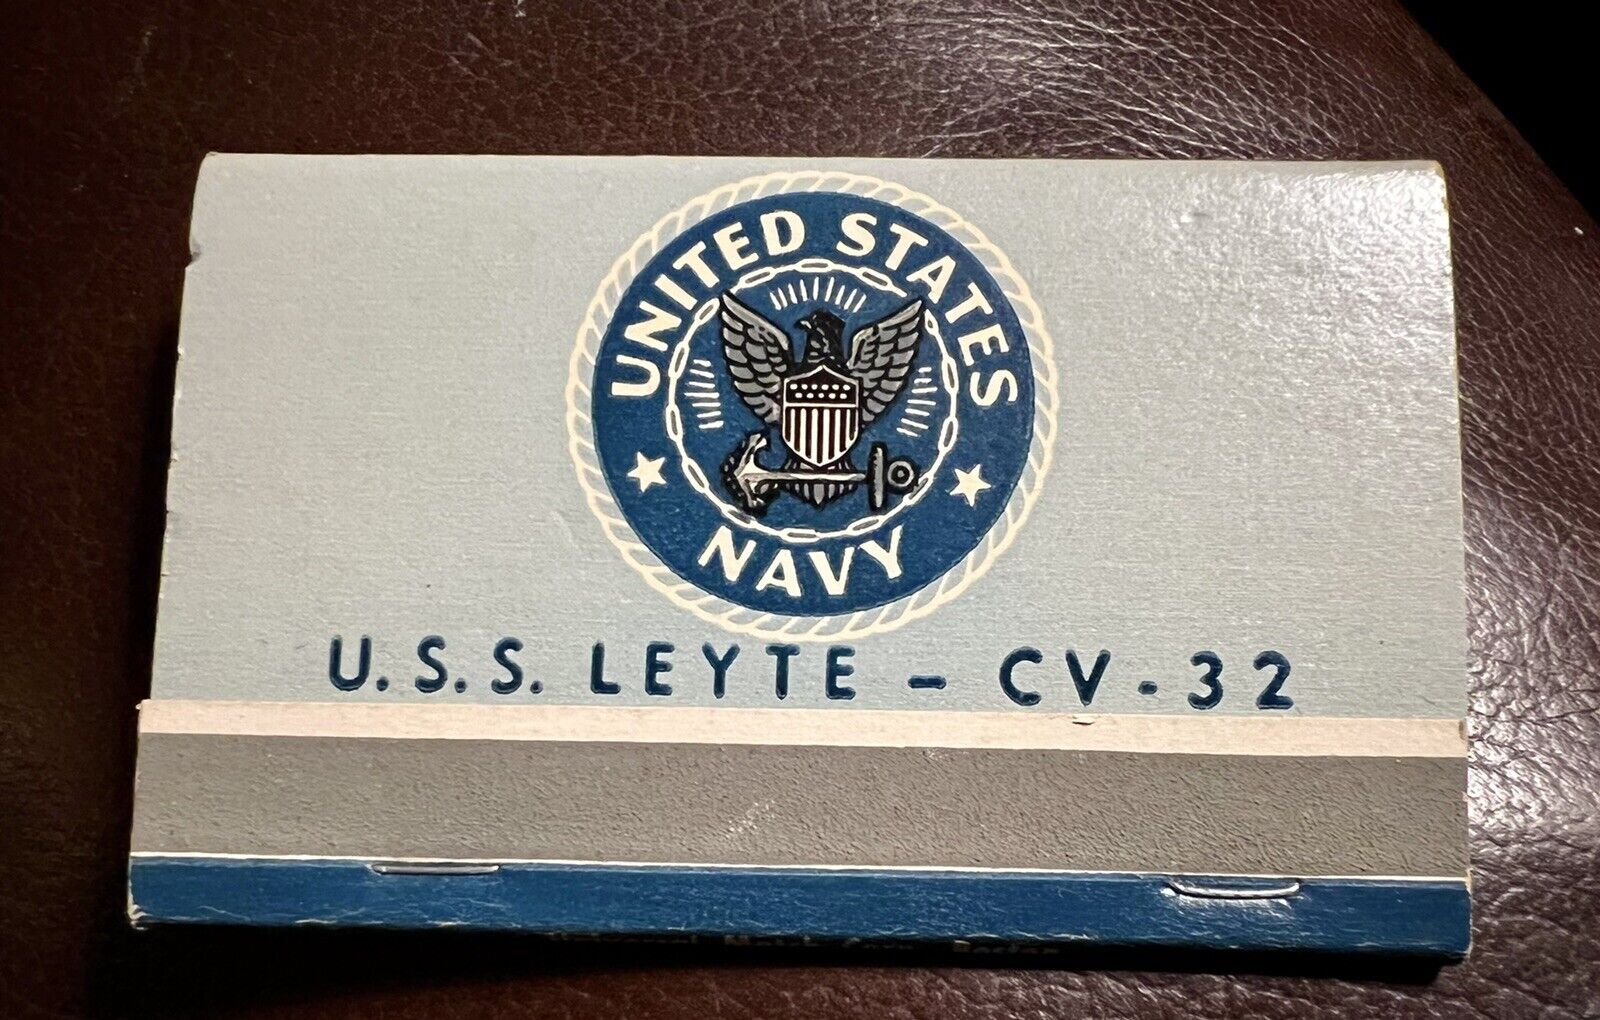 United States Navy, U.S.S. Leyte - CV - 32 - Vintage 40-Stick Matchbook